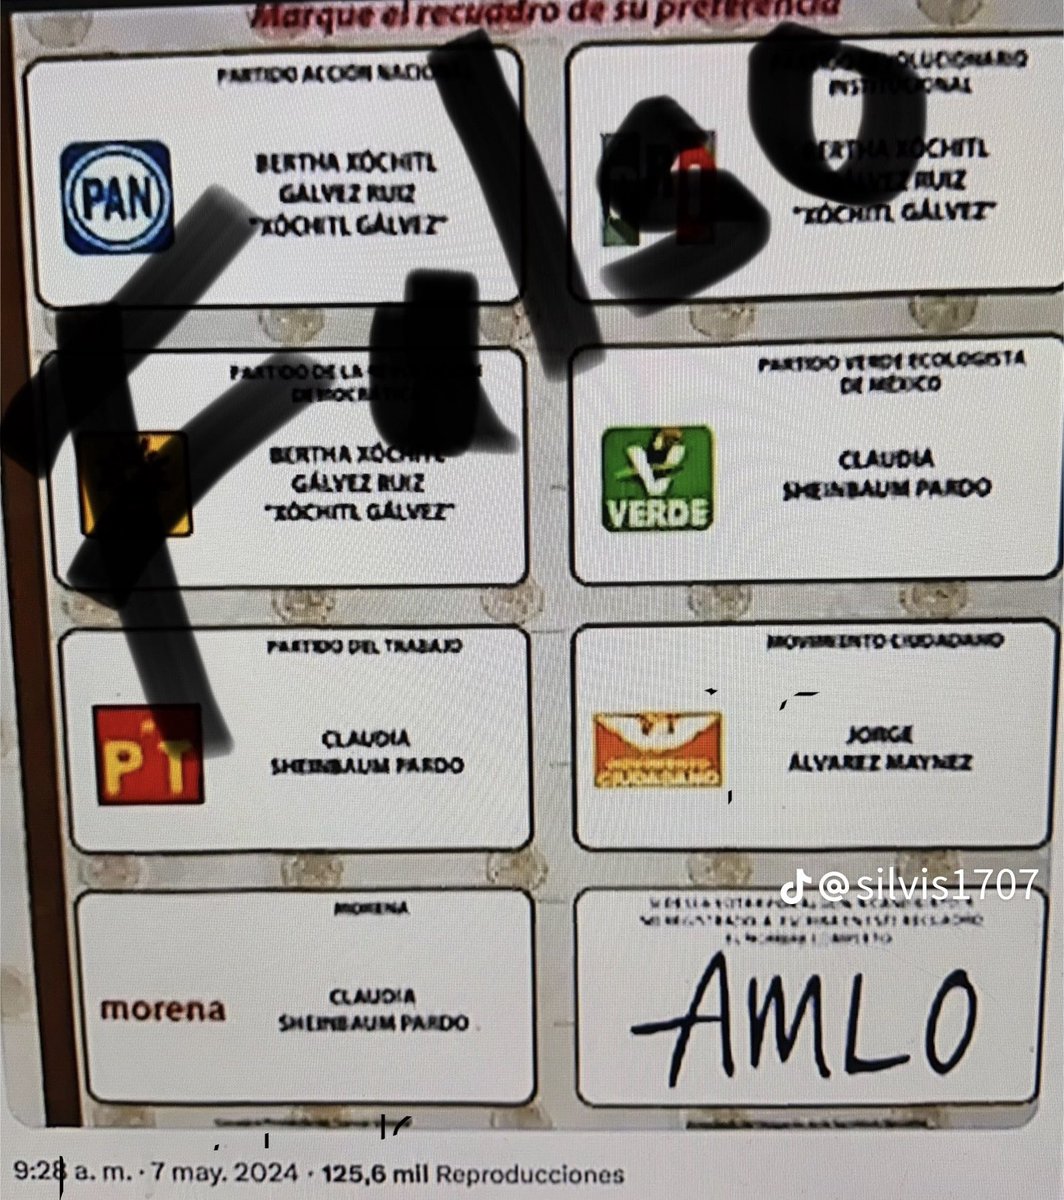 Anda circulando en redes invitando a votar por AMLO, y que así lo podemos reelegir Es TOTALMENTE FALSO si pones AMLO en el espacio que es para candidatos no registrados, estarás ANULANDO TU VOTO, por que en México no existe la reelección. Si estás contento con AMLO,…